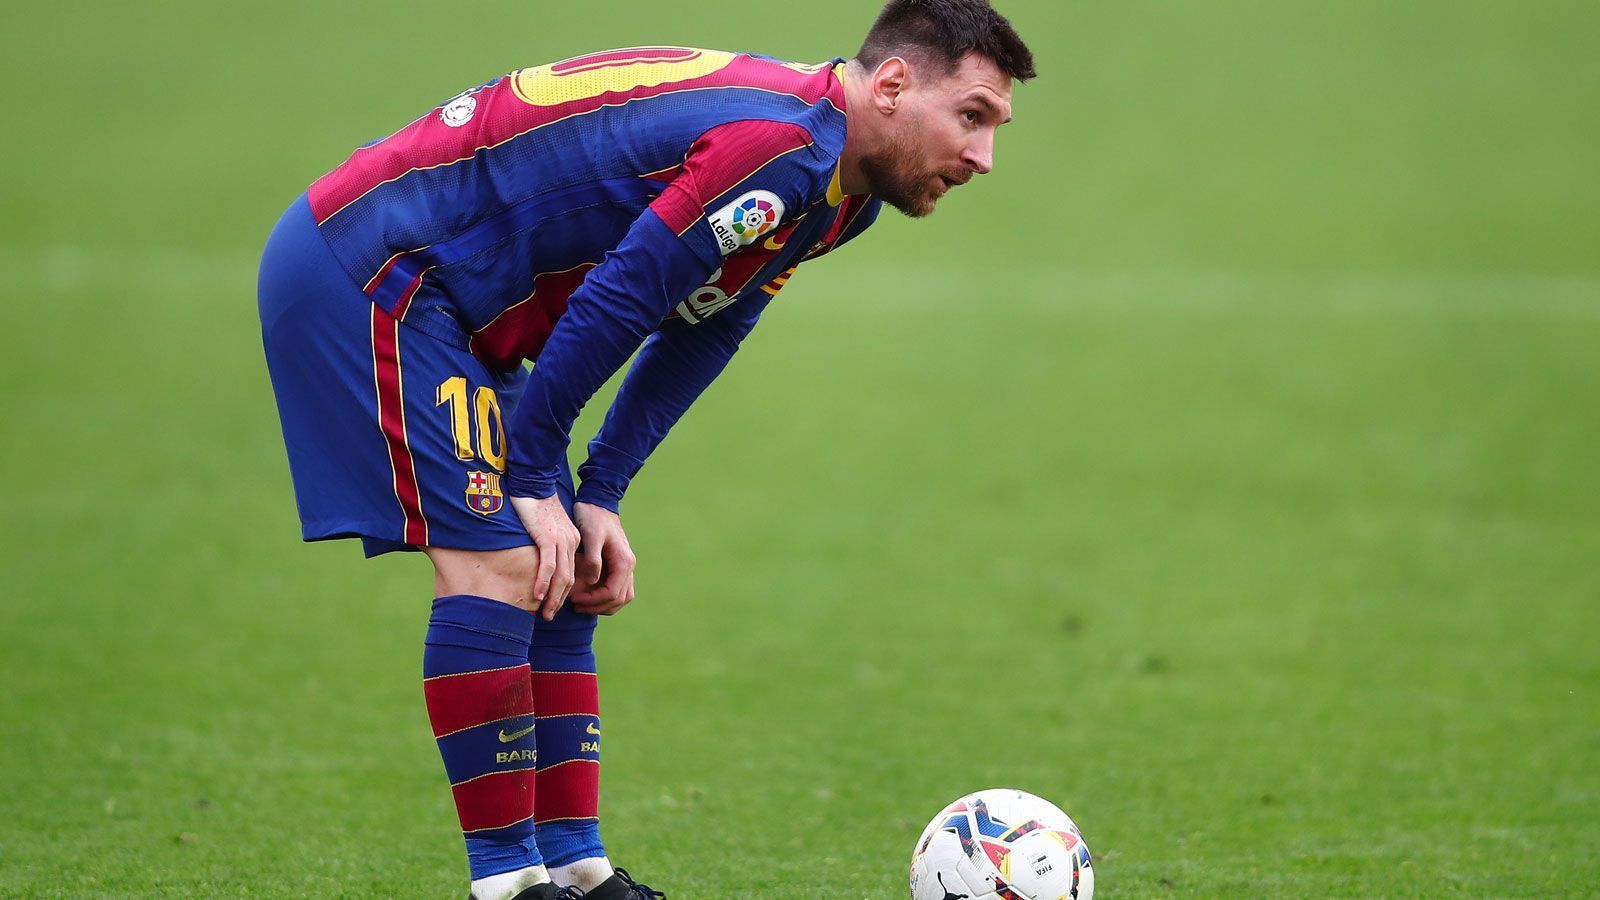 
                <strong>Lionel Messi (FC Barcelona)</strong><br>
                Vertrag endet: 2021Ursprünglich wollte Lionel Messi dem FC Barcelona schon 2020 den Rücken kehren, doch um keinen Streit um die Ablösesumme vom Zaun zu brechen, erfüllt der Argentinier seinen Vertrag nun doch. Die Chancen auf einen Verbleib bei den Katalanen dürften aber schecht stehen. Dem hoch verschuldeten Klub fehlt schlicht das Geld, um das bisherige Gehalt des sechsmaligen Weltfußballers auch nur annähernd aufzubringen. Auch die sportliche Perspektive sieht alles andere als rosig aus: Die Champions League ist nach dem Achtelfinale beendet, in der Meisterschaft spielen die "Blaugrana" nur die zweite oder dritte Geige. Der neue Präsident Joan Laporta will zwar alles tun, um "la Pulga" zu binden, doch das dürfte sich weit komplizierter gestalten als der Weg auf den Barca-Thron. Messi wurde besonders mit Paris St. Germain und Manchester City in Verbindung gebracht. Die Franzosen werden von Landsmann Mauricio Pochettino trainiert, die Engländer von Pep Guardiola, unter dem Messi in Barcelona seine größten Erfolge feierte.
              